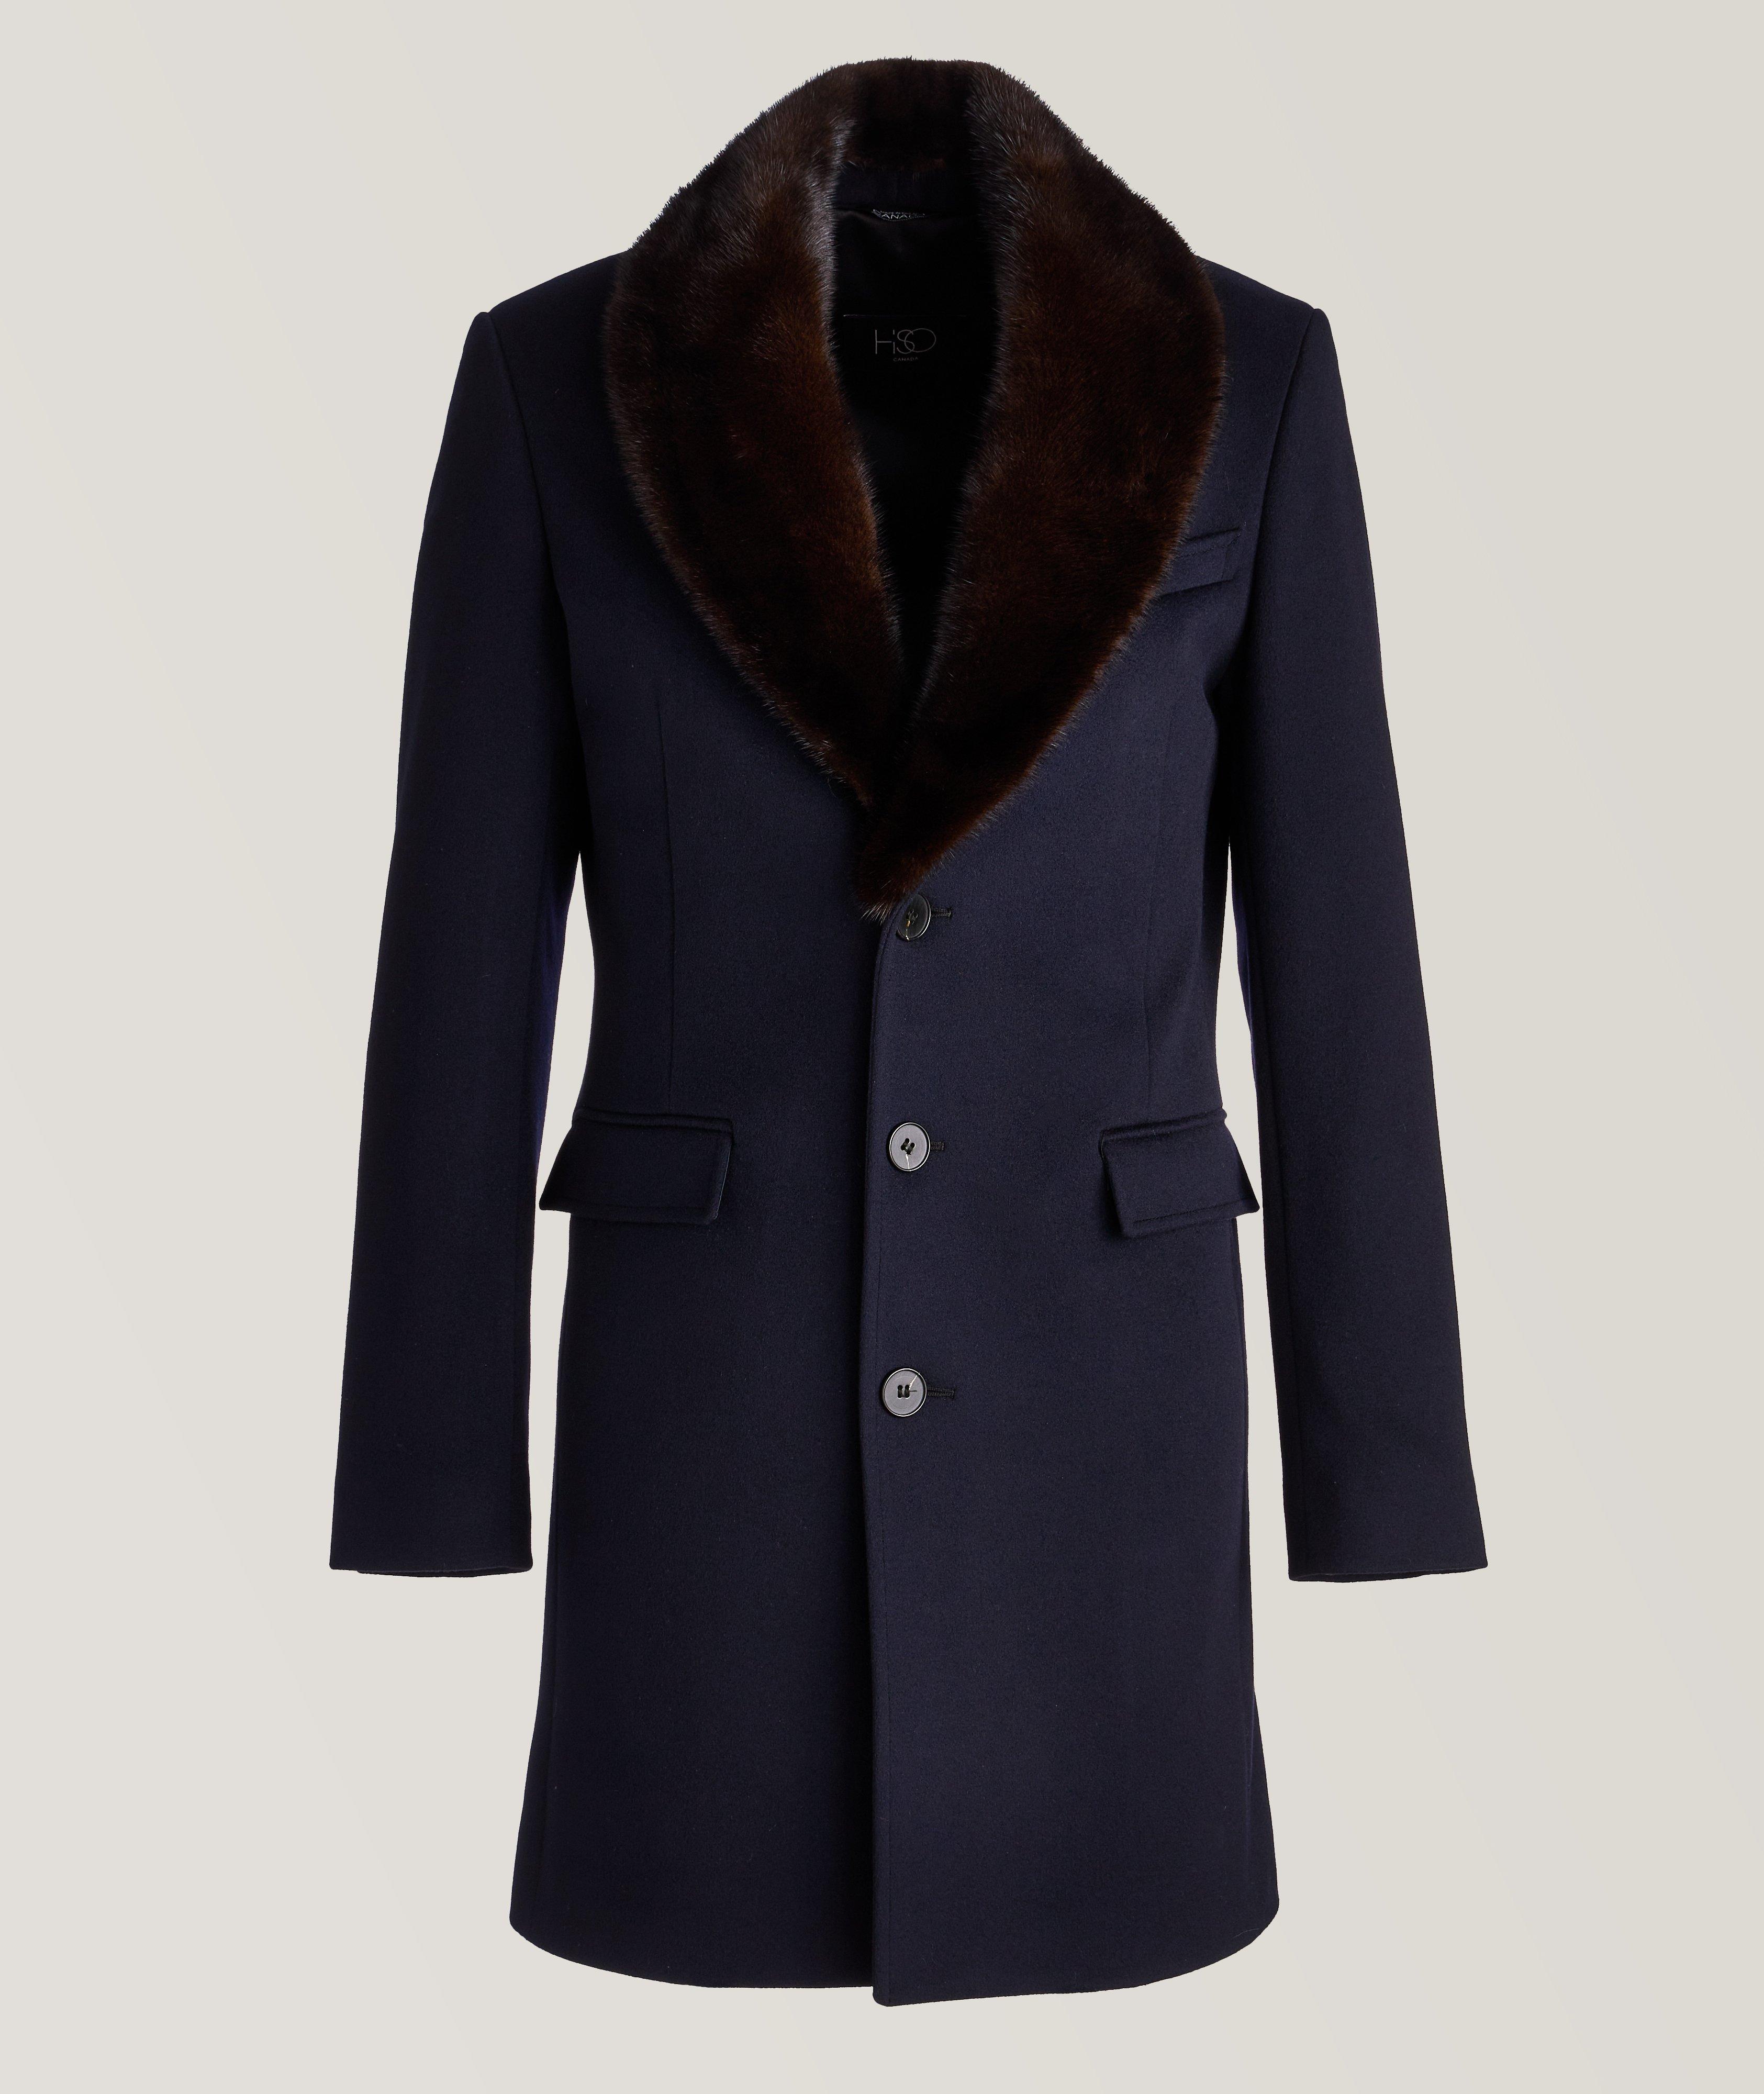 HiSO 5296 Wool Mink Lapel Overcoat | Coats | Harry Rosen